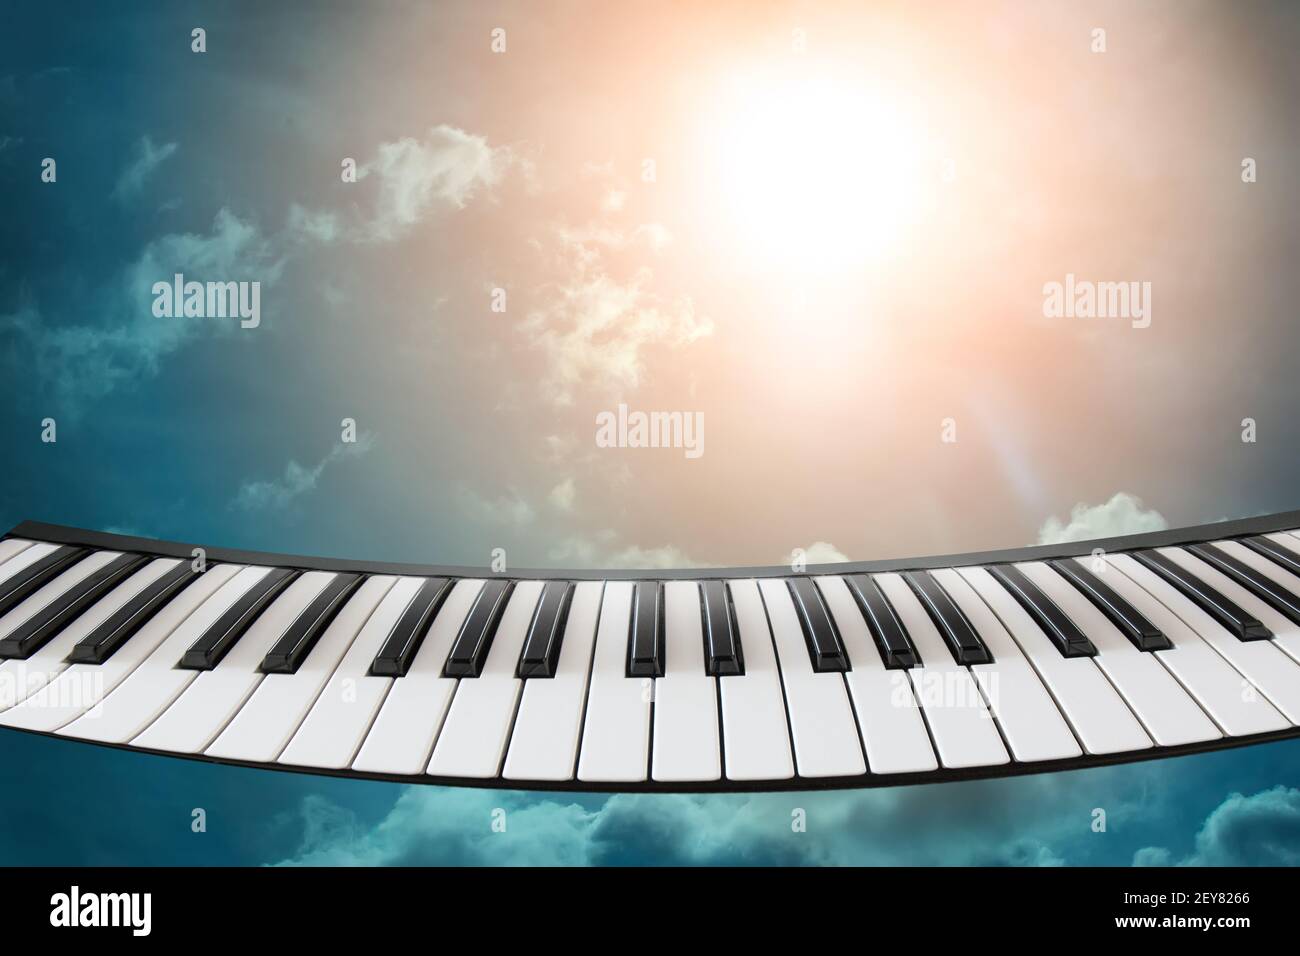 Composizione della tastiera a piano su sfondo cielo. Concetto di musica, natura, creazione, unità di musica e natura. Foto Stock